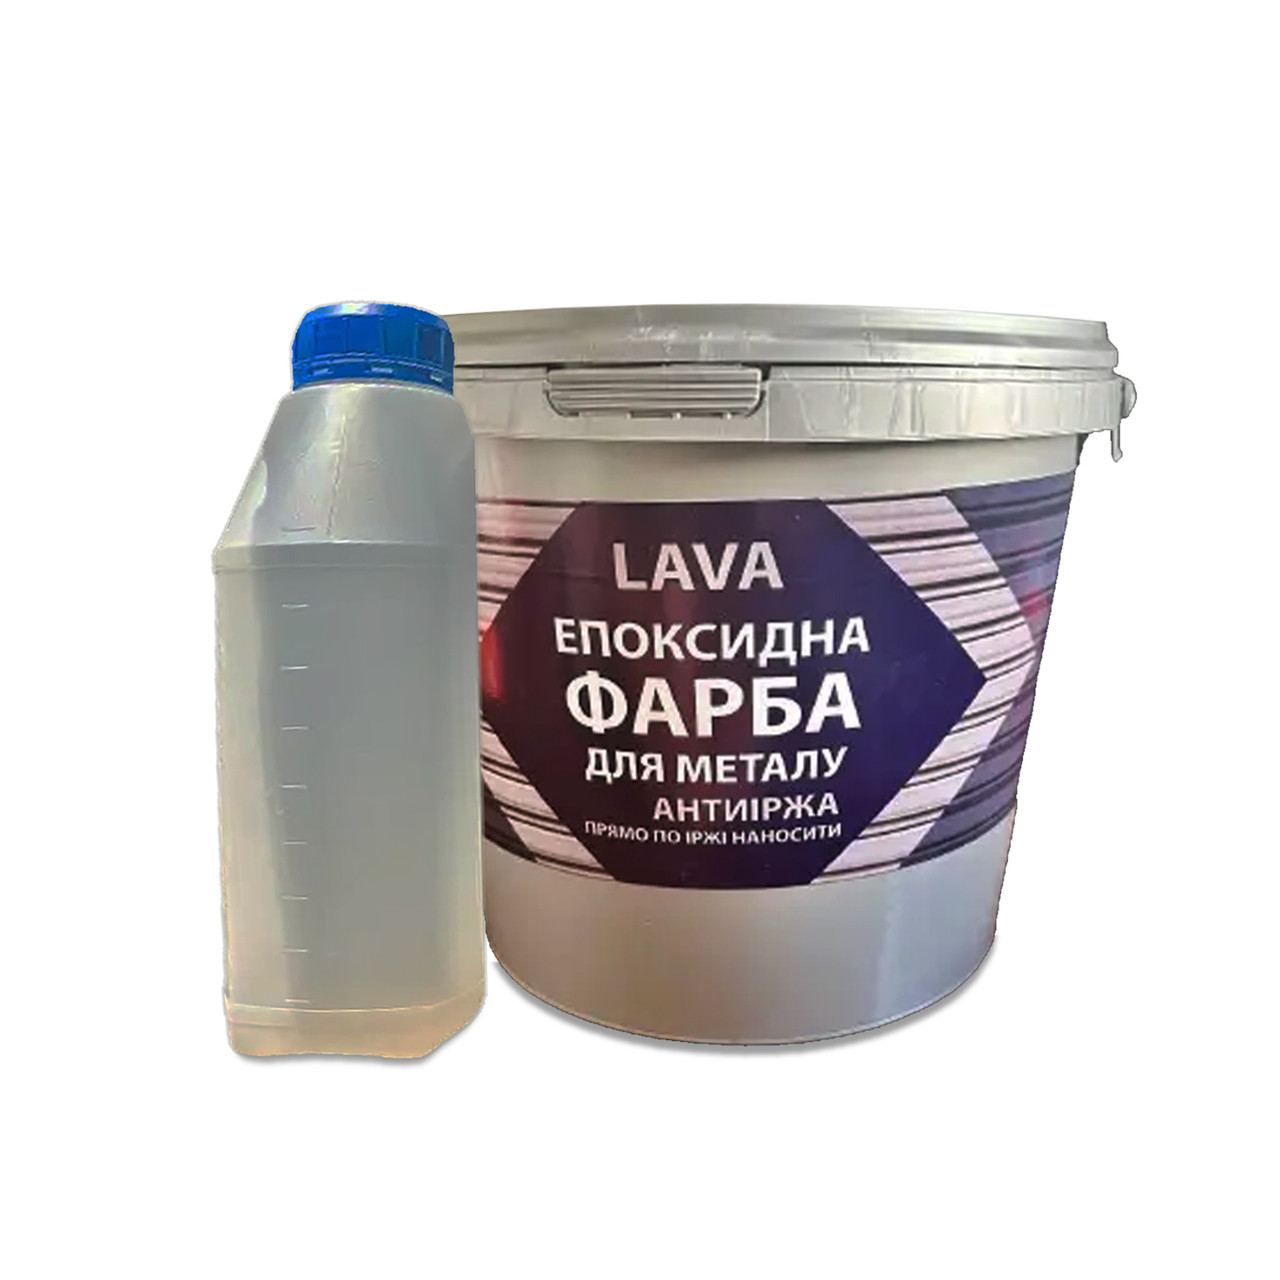 Фарба для металу епоксидна Lava™ 4.5кг RAL 7012 темно-сірий (захист від корозії) greenpharm